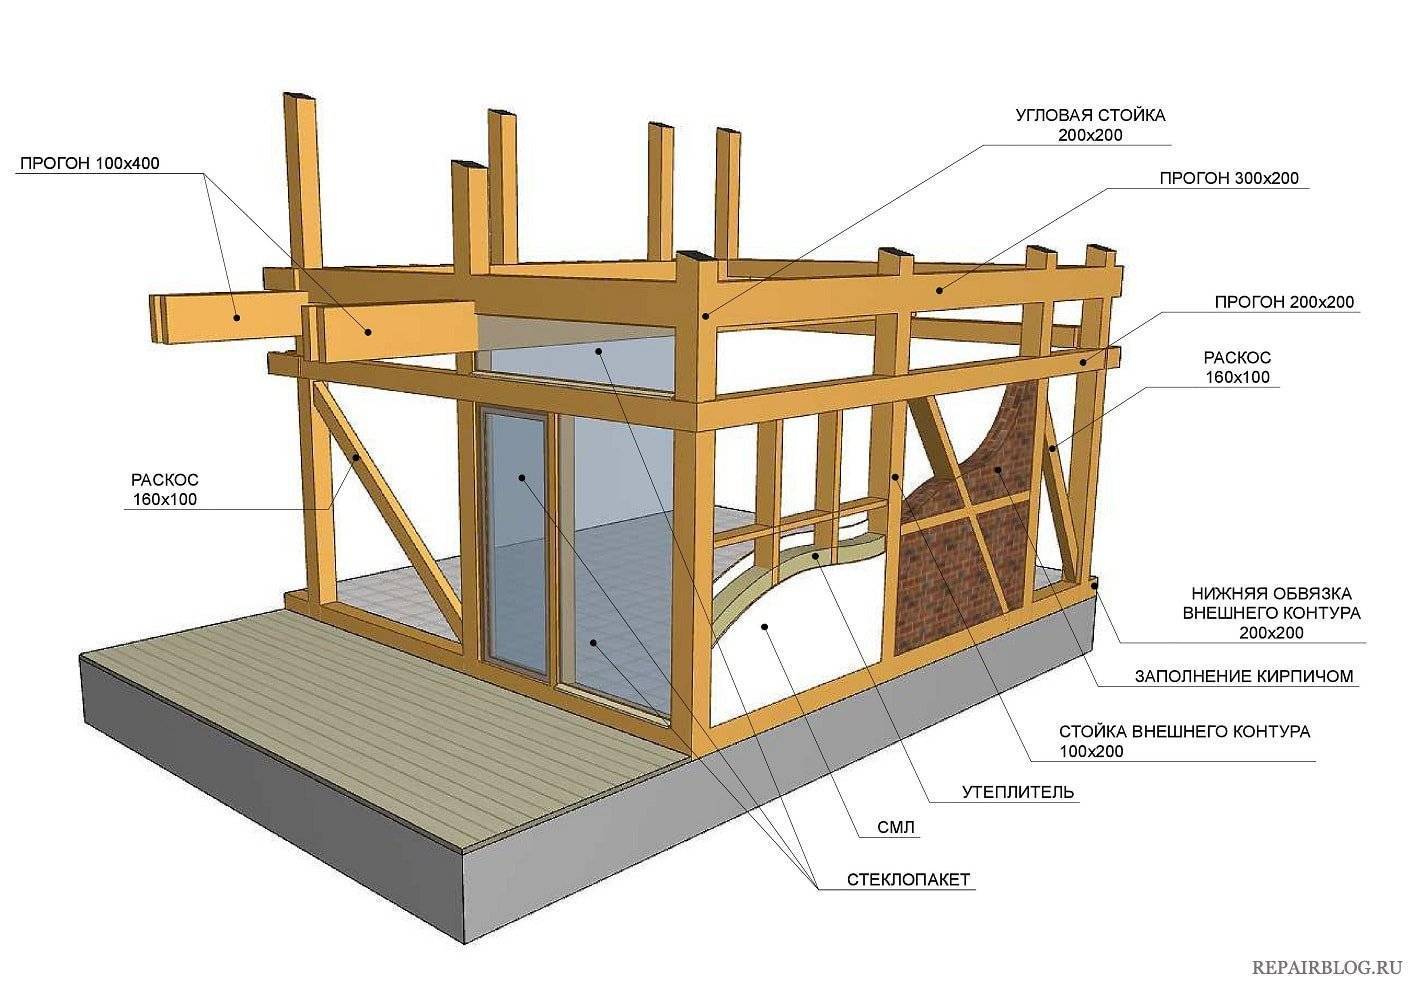 Строительство домов по каркасной технологии: история, особенности, плюсы и минусы технологии, мифы, проекты и цены под ключ в москве